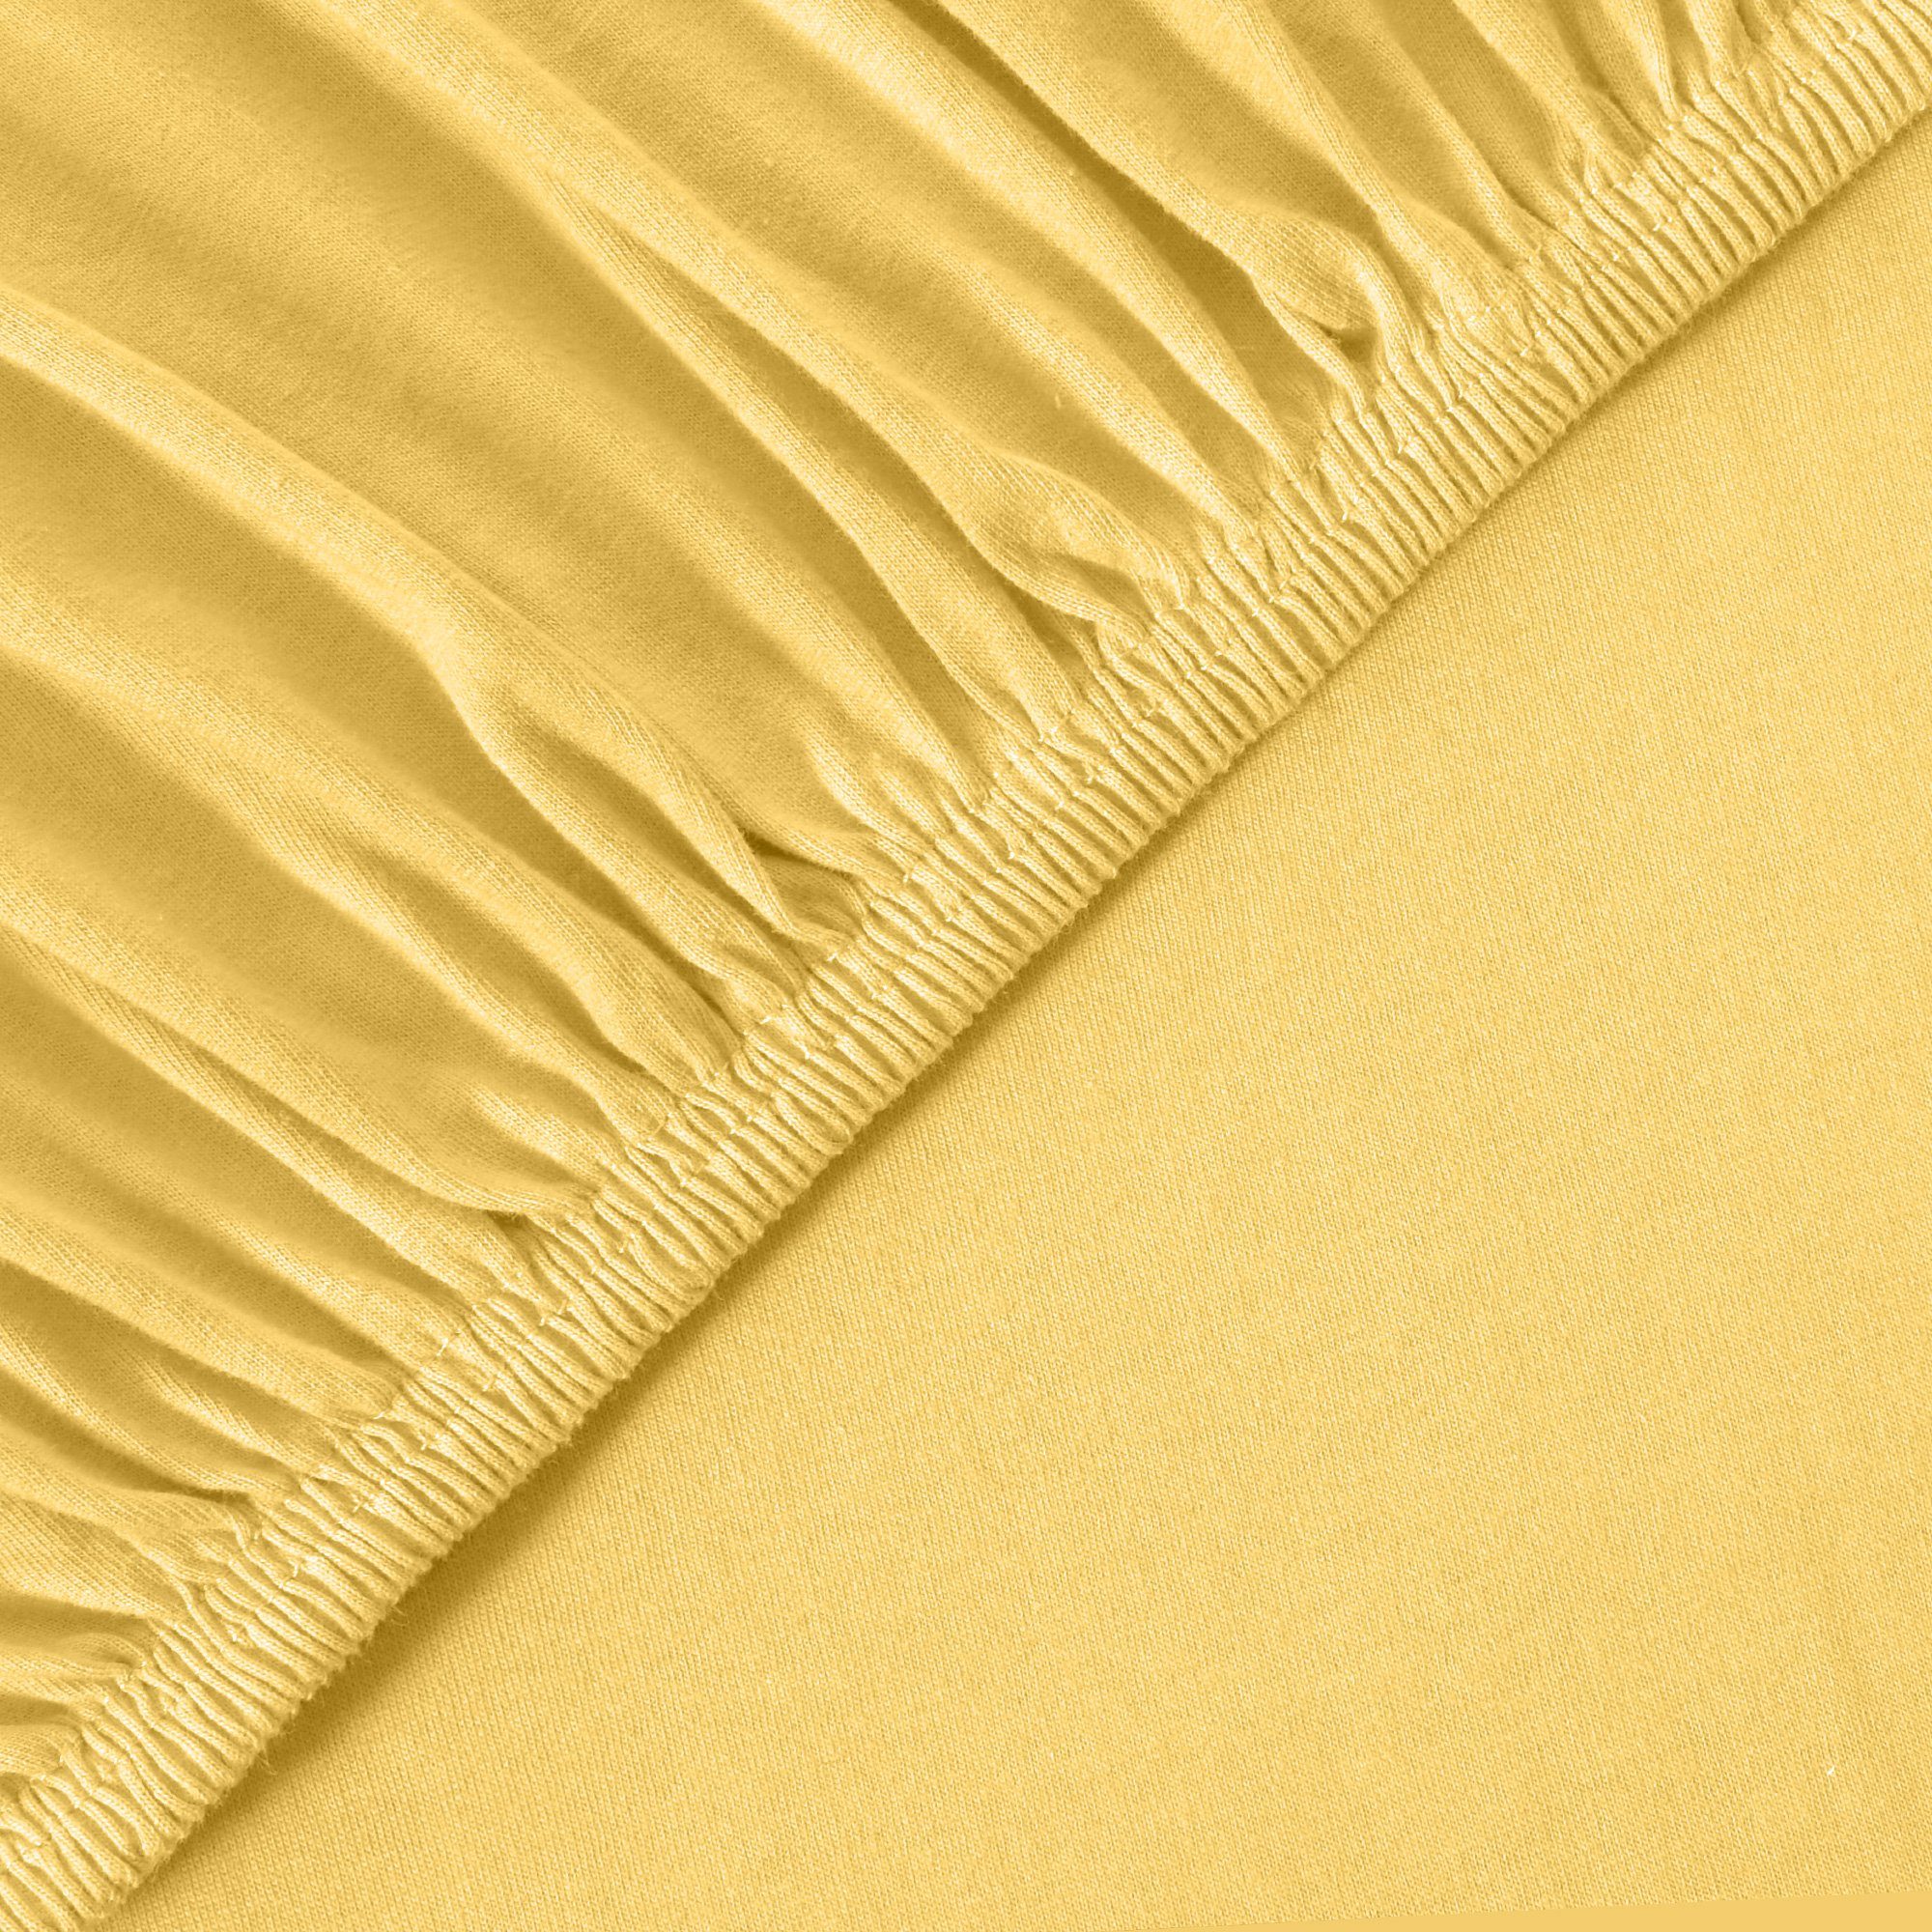 Farben leevitex®, Größen Mais / Baumwolle, Jersey, und Gelb dehnbar, Spannbettlaken & Gummizug: 100% rundum, anschmiegsam Classic diverse